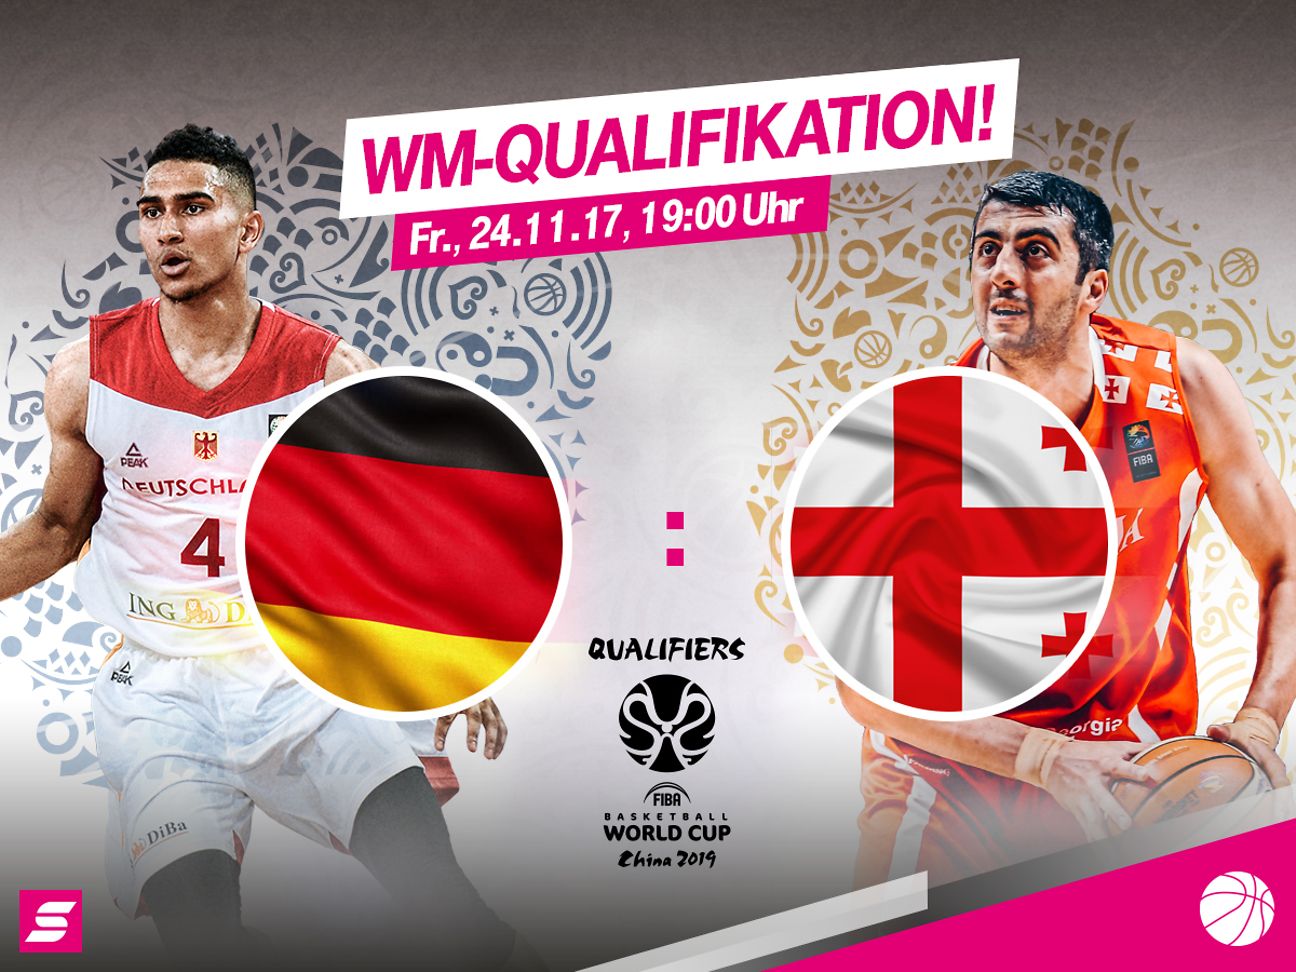 Telekom zeigt WM-Qualifikationsspiele der deutschen Basketball-Nationalmannschaft kostenlos Deutsche Telekom